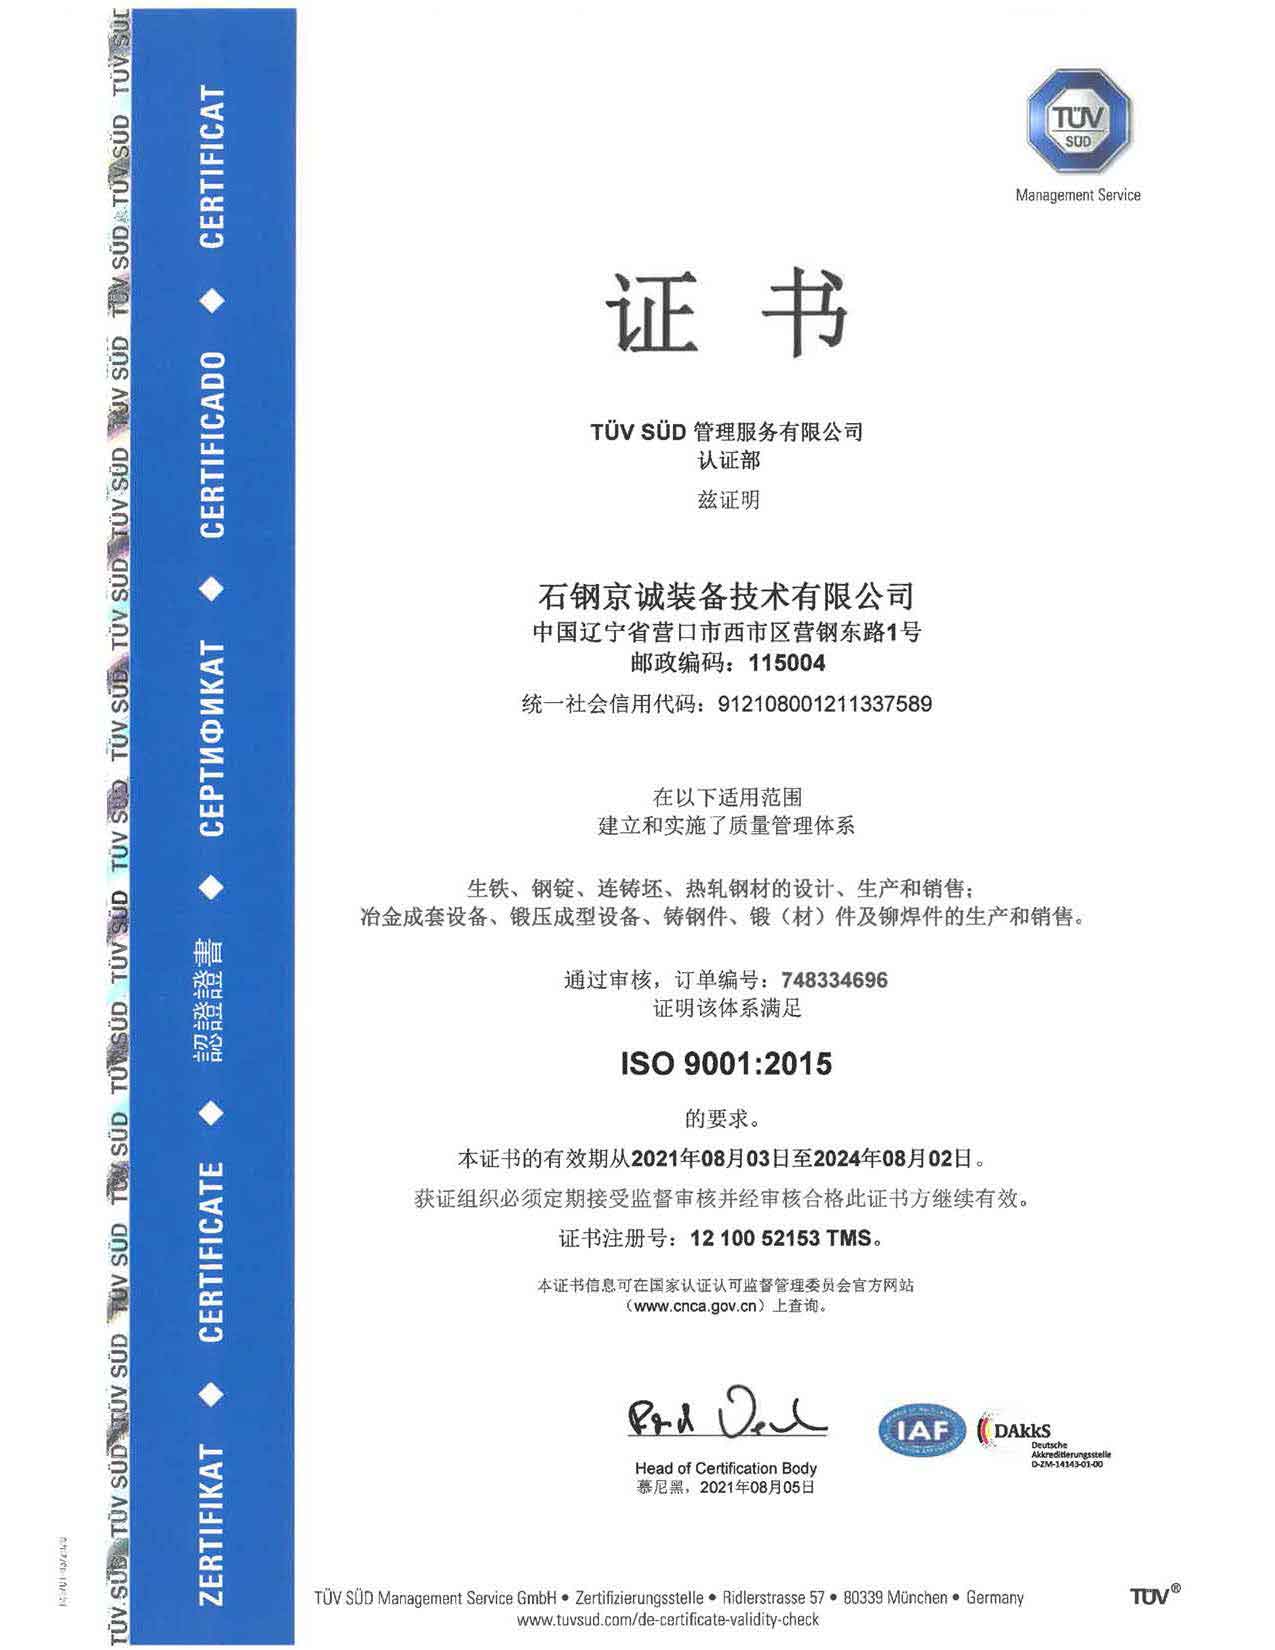 <b>ISO90012015 certificate (chi)</b>